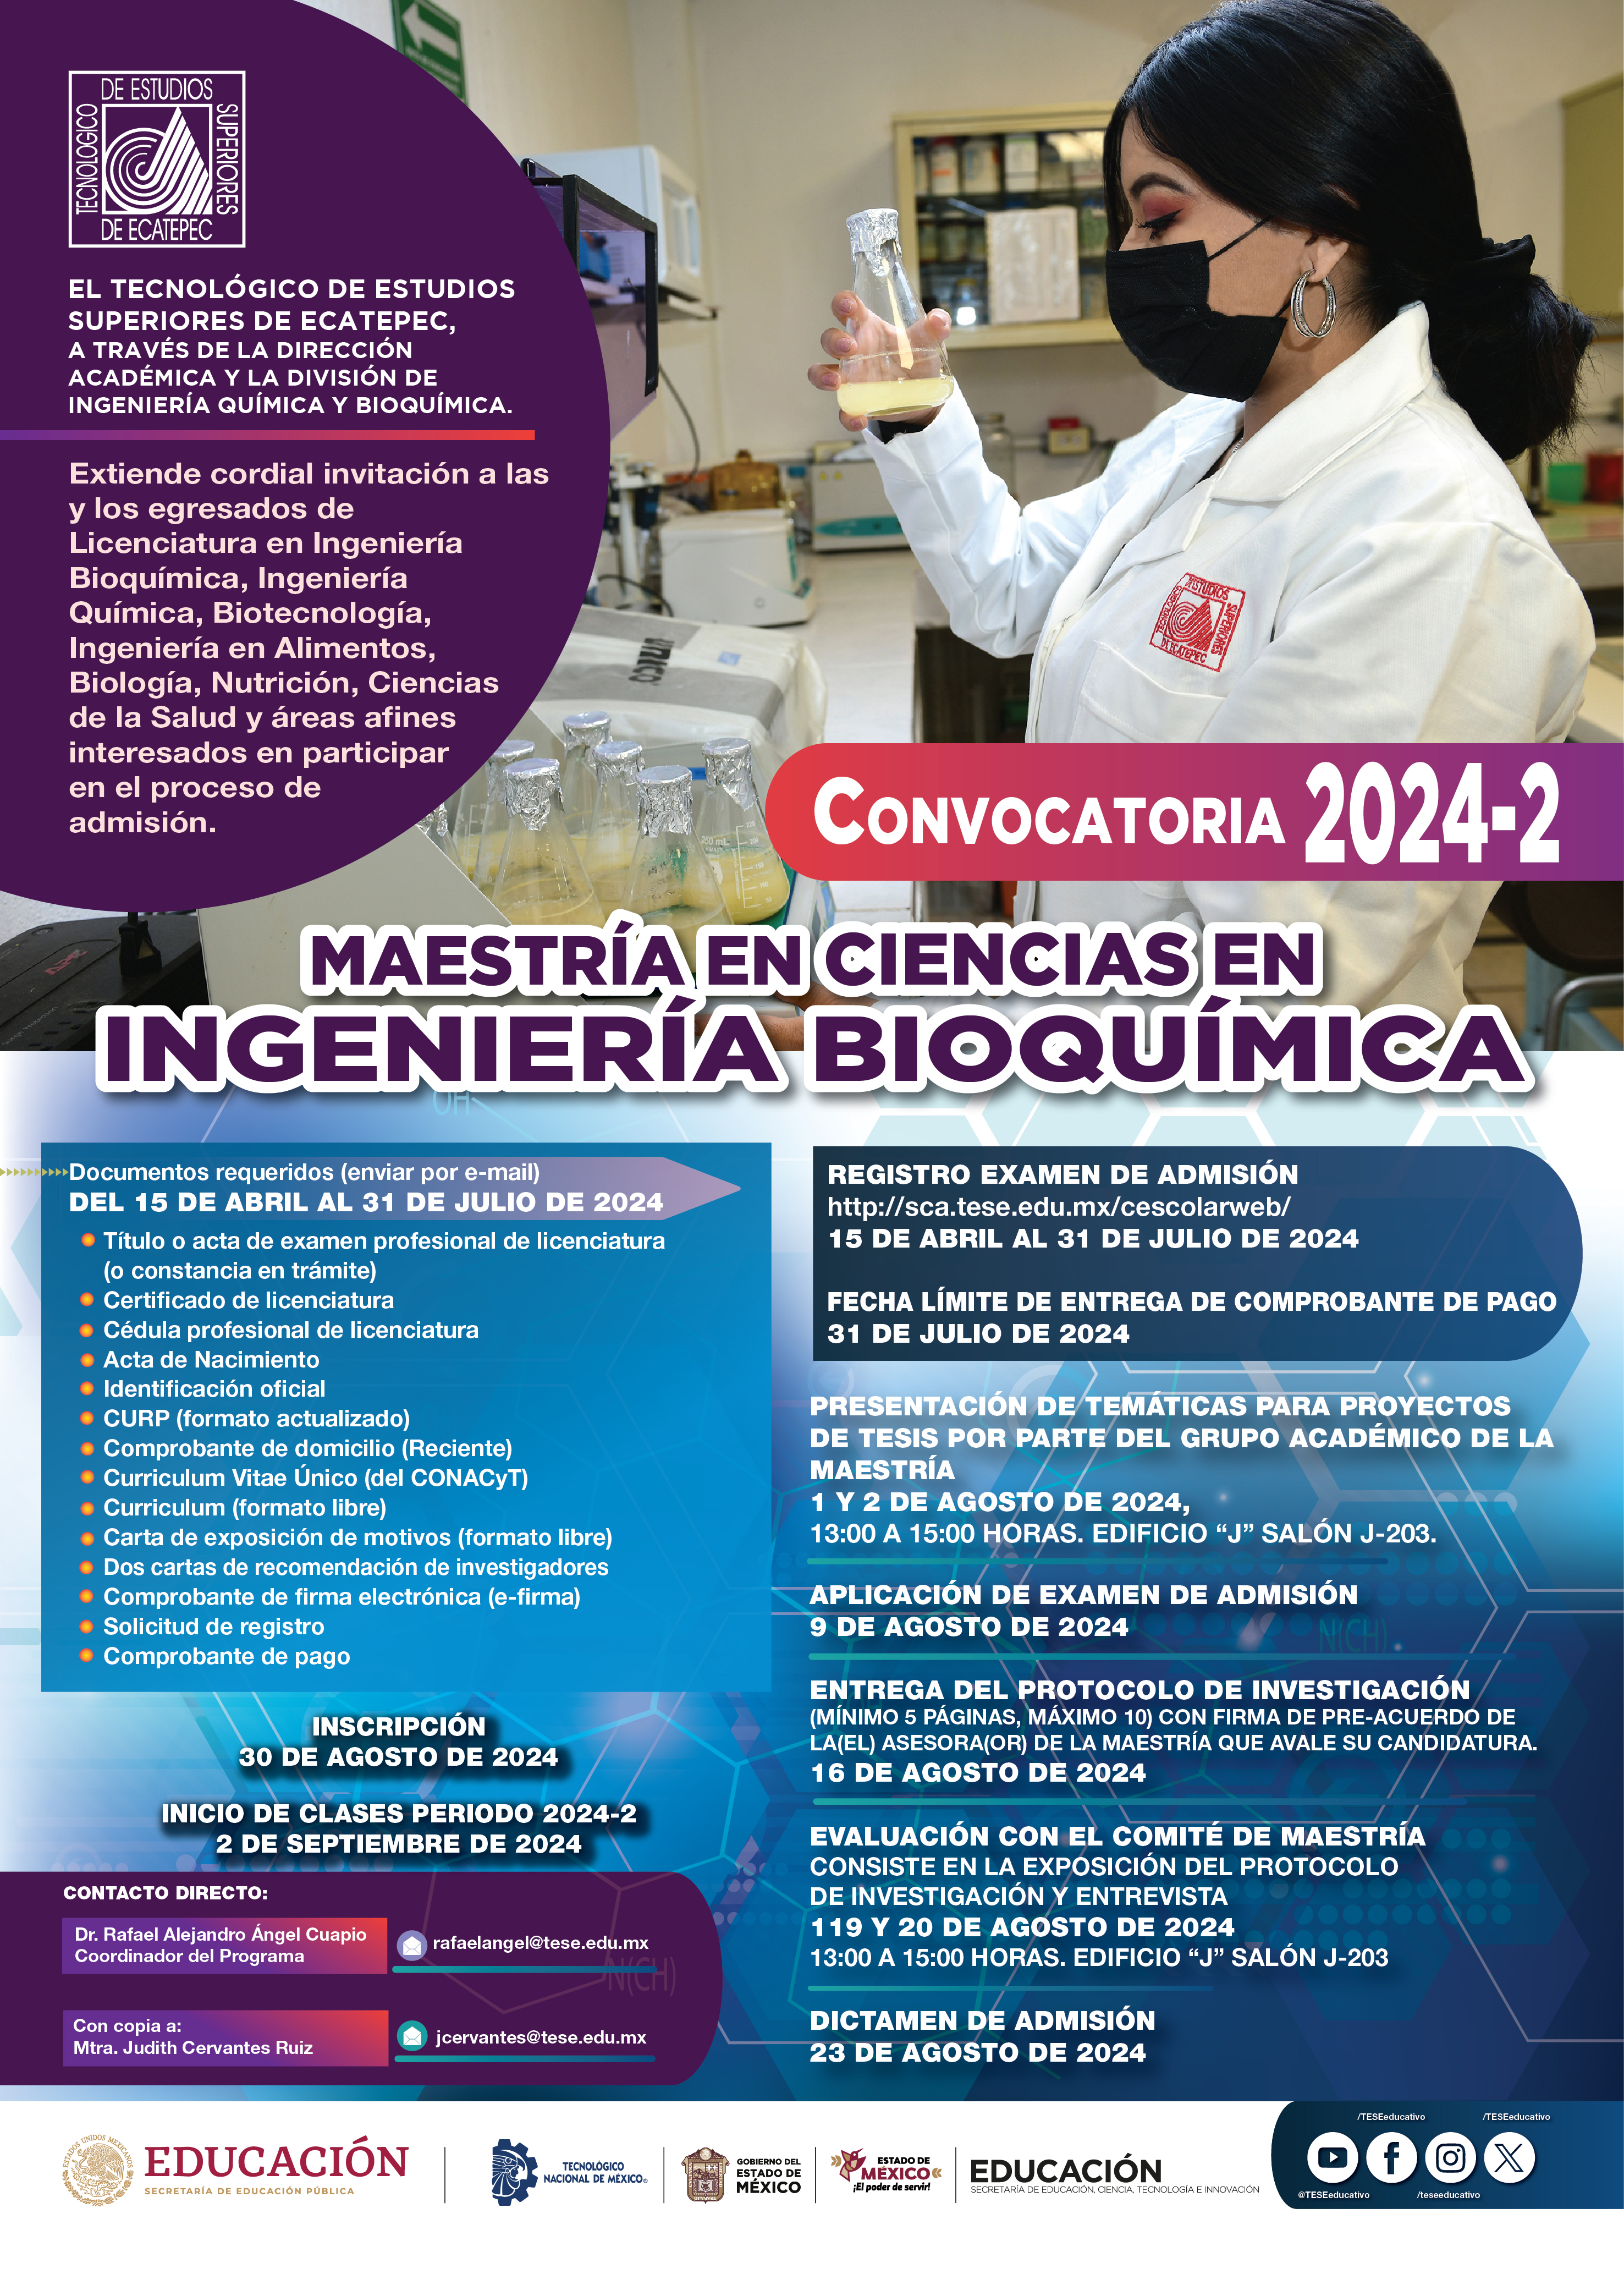 Convocatoria Maestría en Ciencias Ingeniería Bioquimica 2024-2